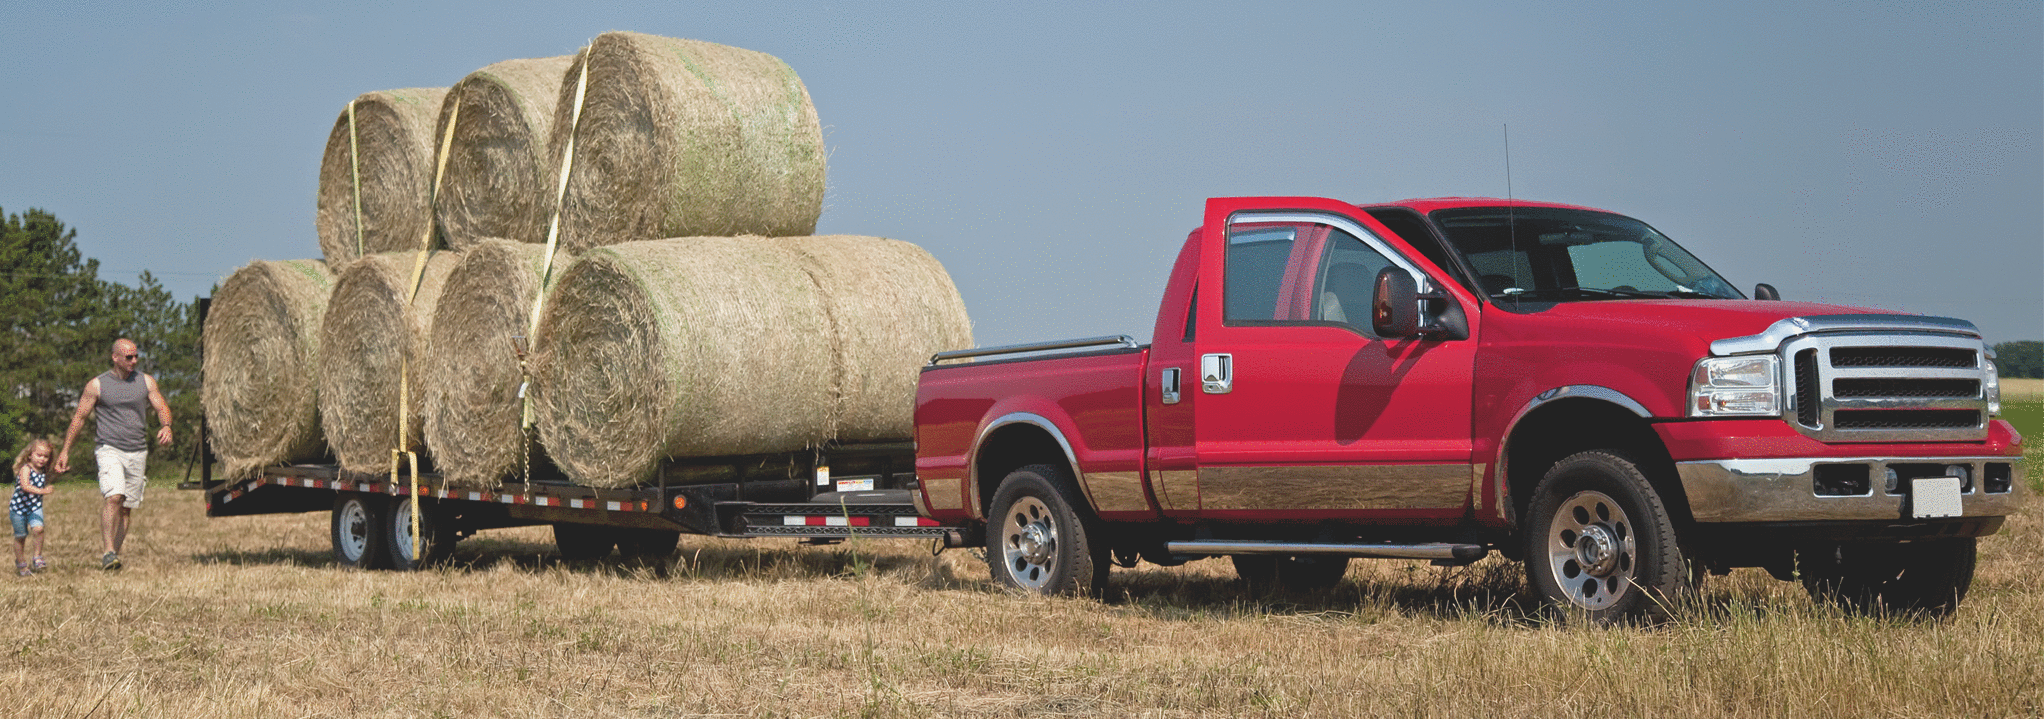 Pickup truck in a Farmer's field loading hay